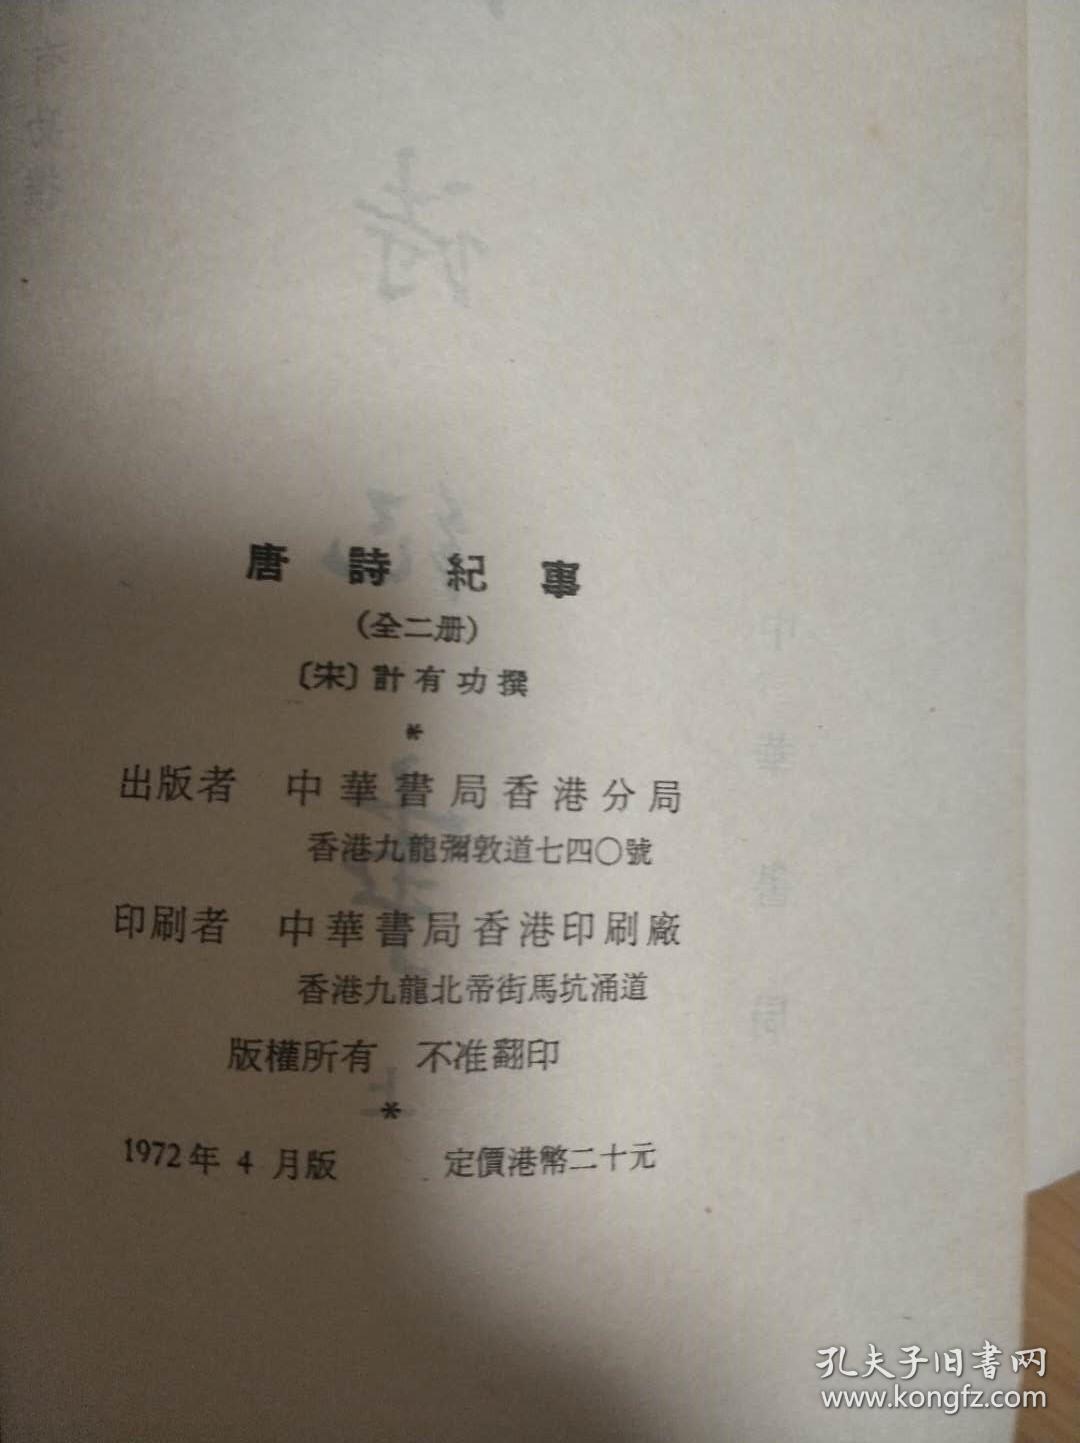 《唐诗纪事》 （二册全）繁体竖版 1972年香港中华书局发行